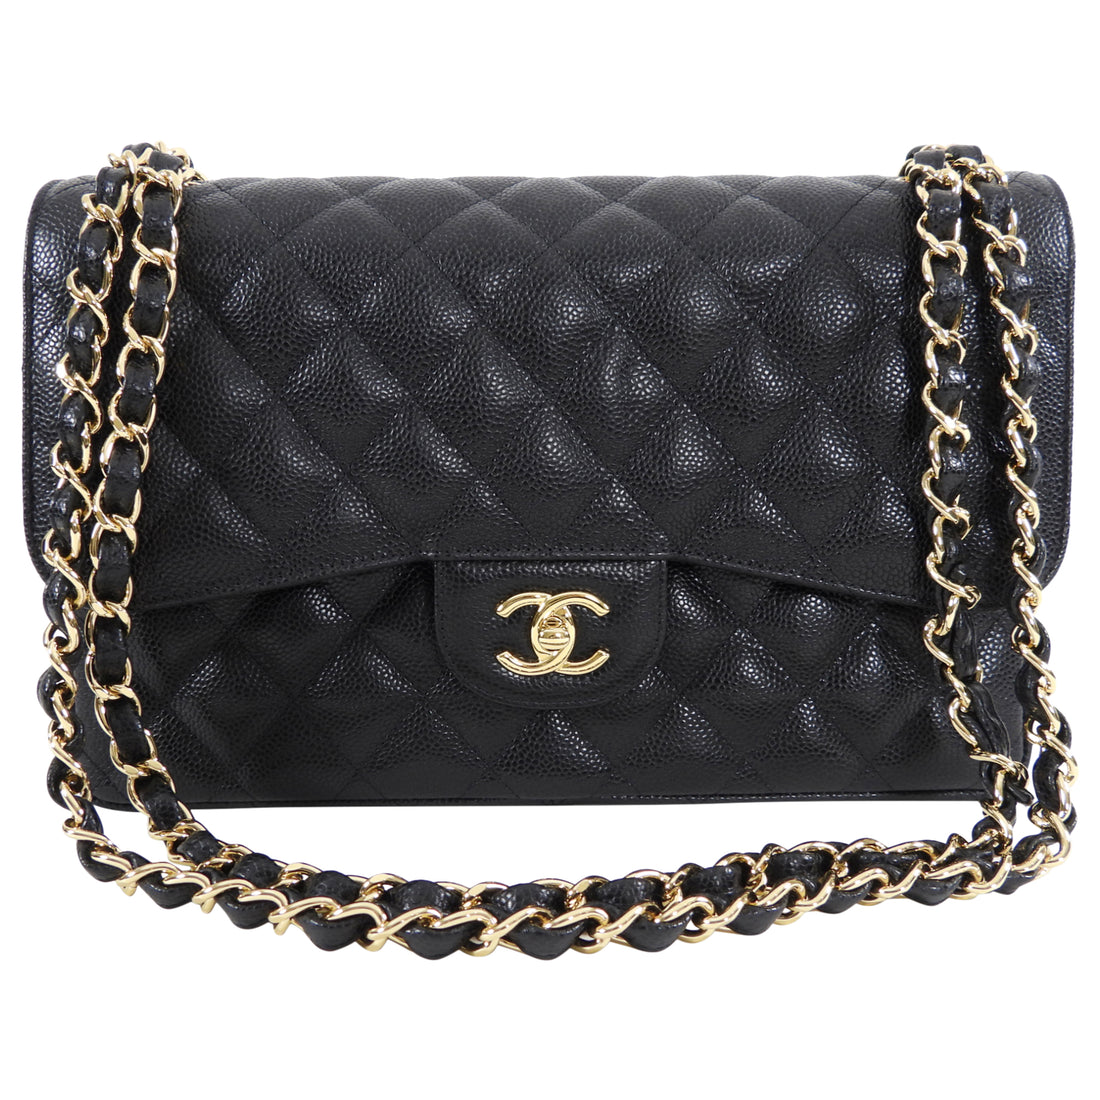 Pre-Owned Chanel Vintage Single Flap GHW Caviar Black Shoulder Bag 